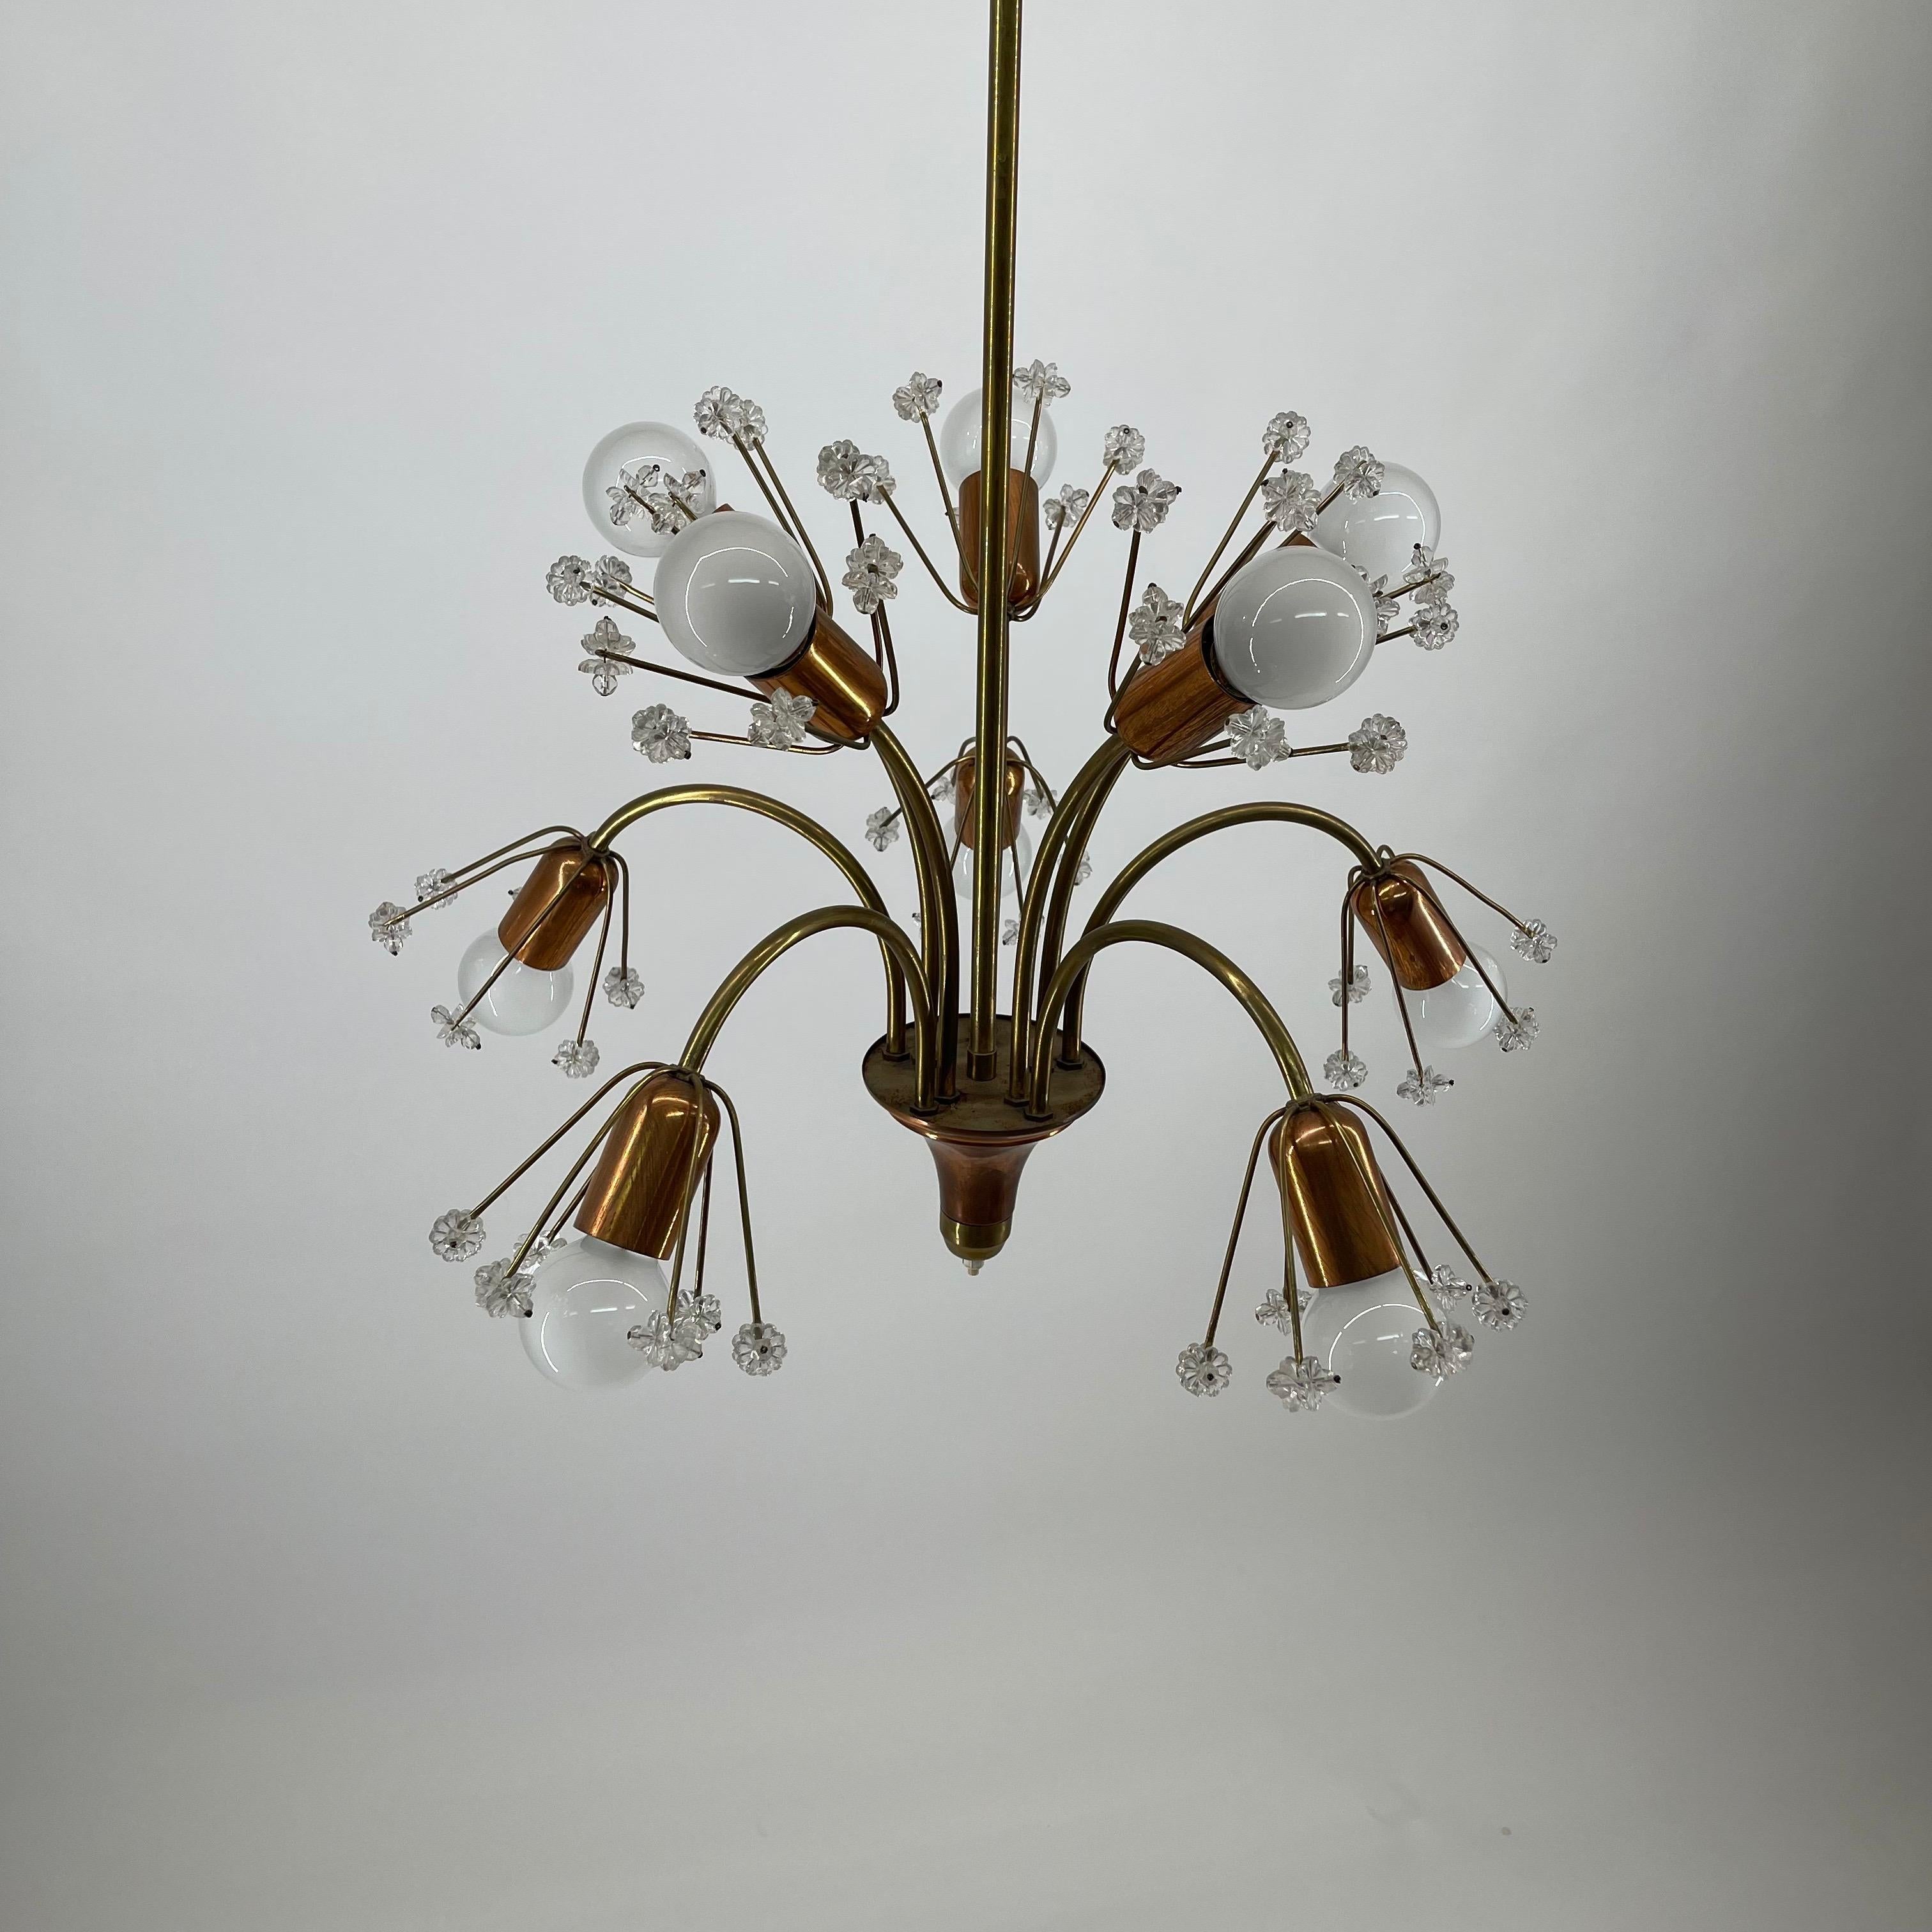 Emil Stejnar Bouquette of flowers brass cooper chandelier, Austria 1950s.